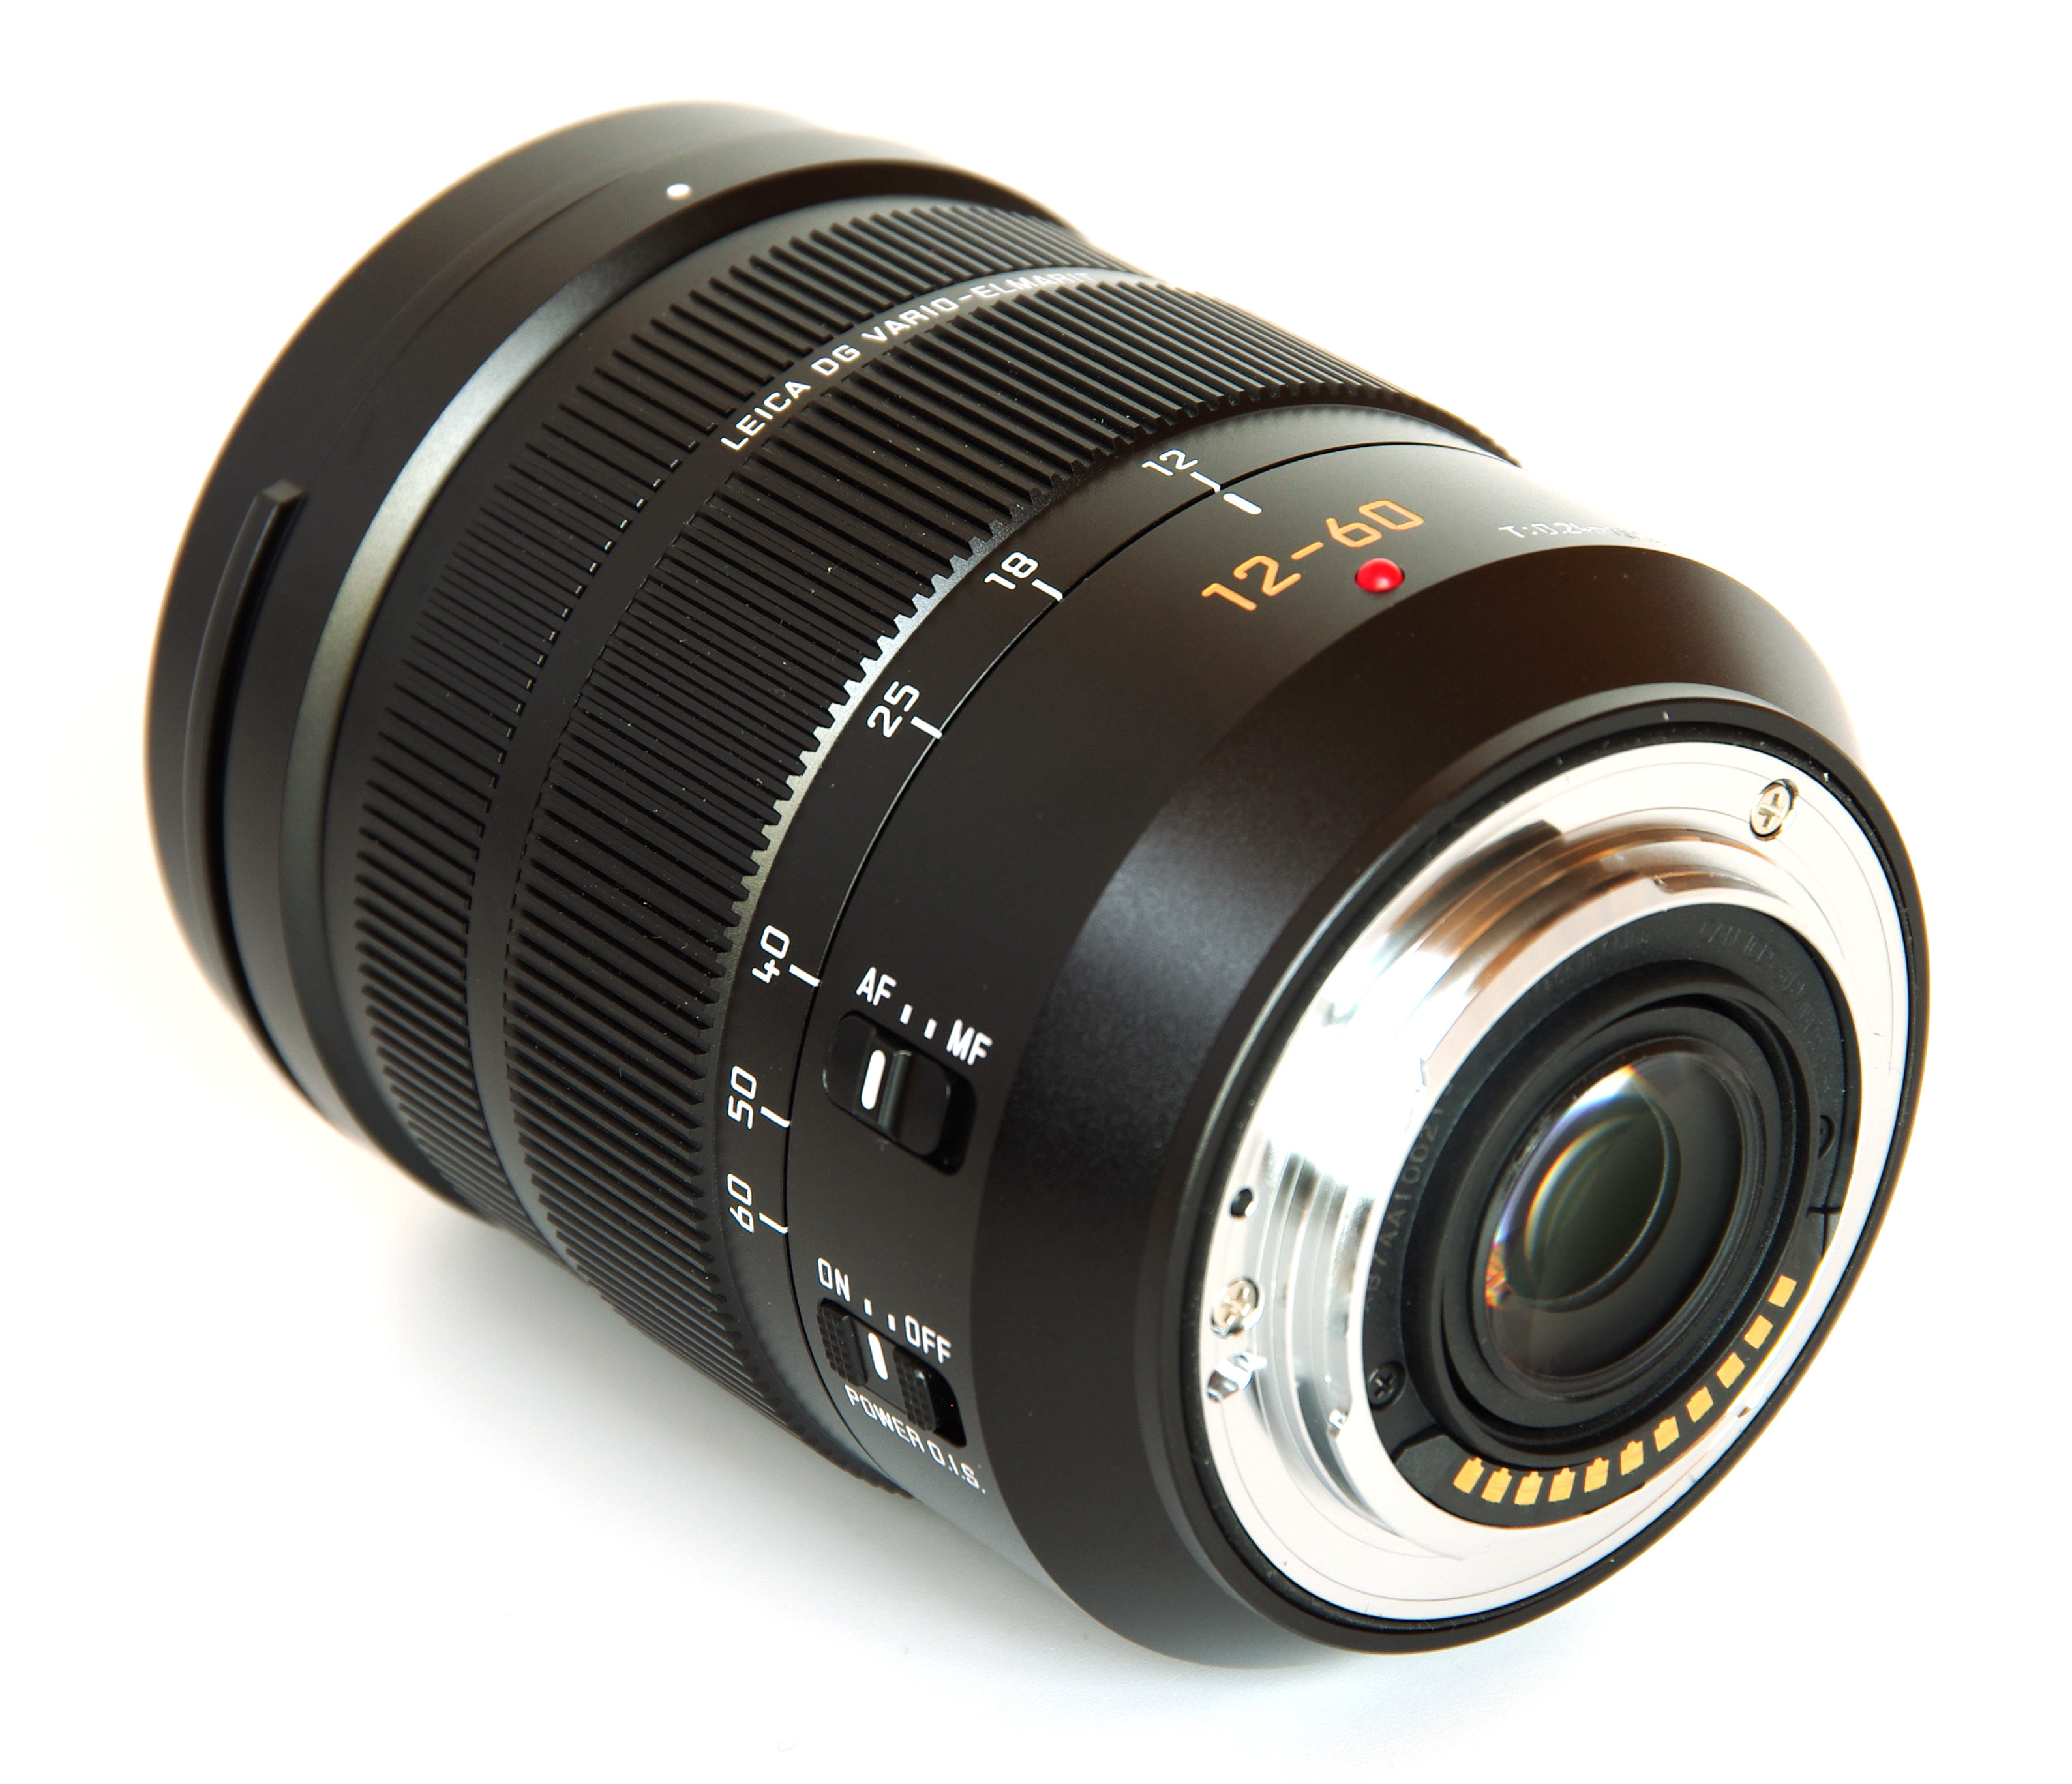 Leica Vario-Elmarit 12-60mm f/2.8-4.0 Review